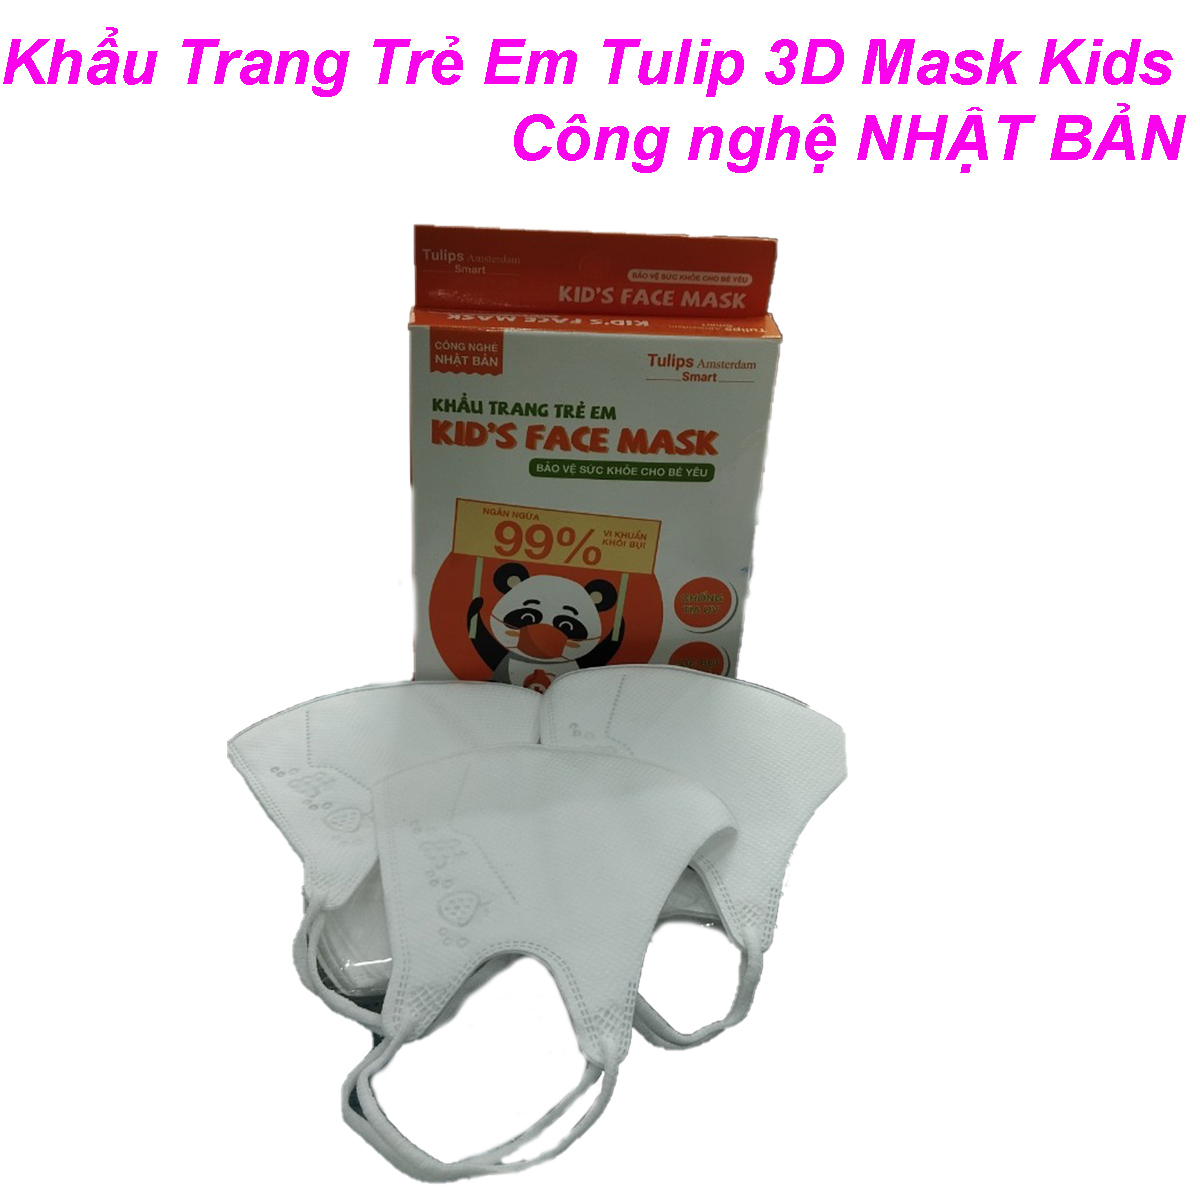 Túi 10 Chiếc  Khẩu Trang Trẻ Em Tulip 3D Mask Kids Công Nghệ Nhật Bản